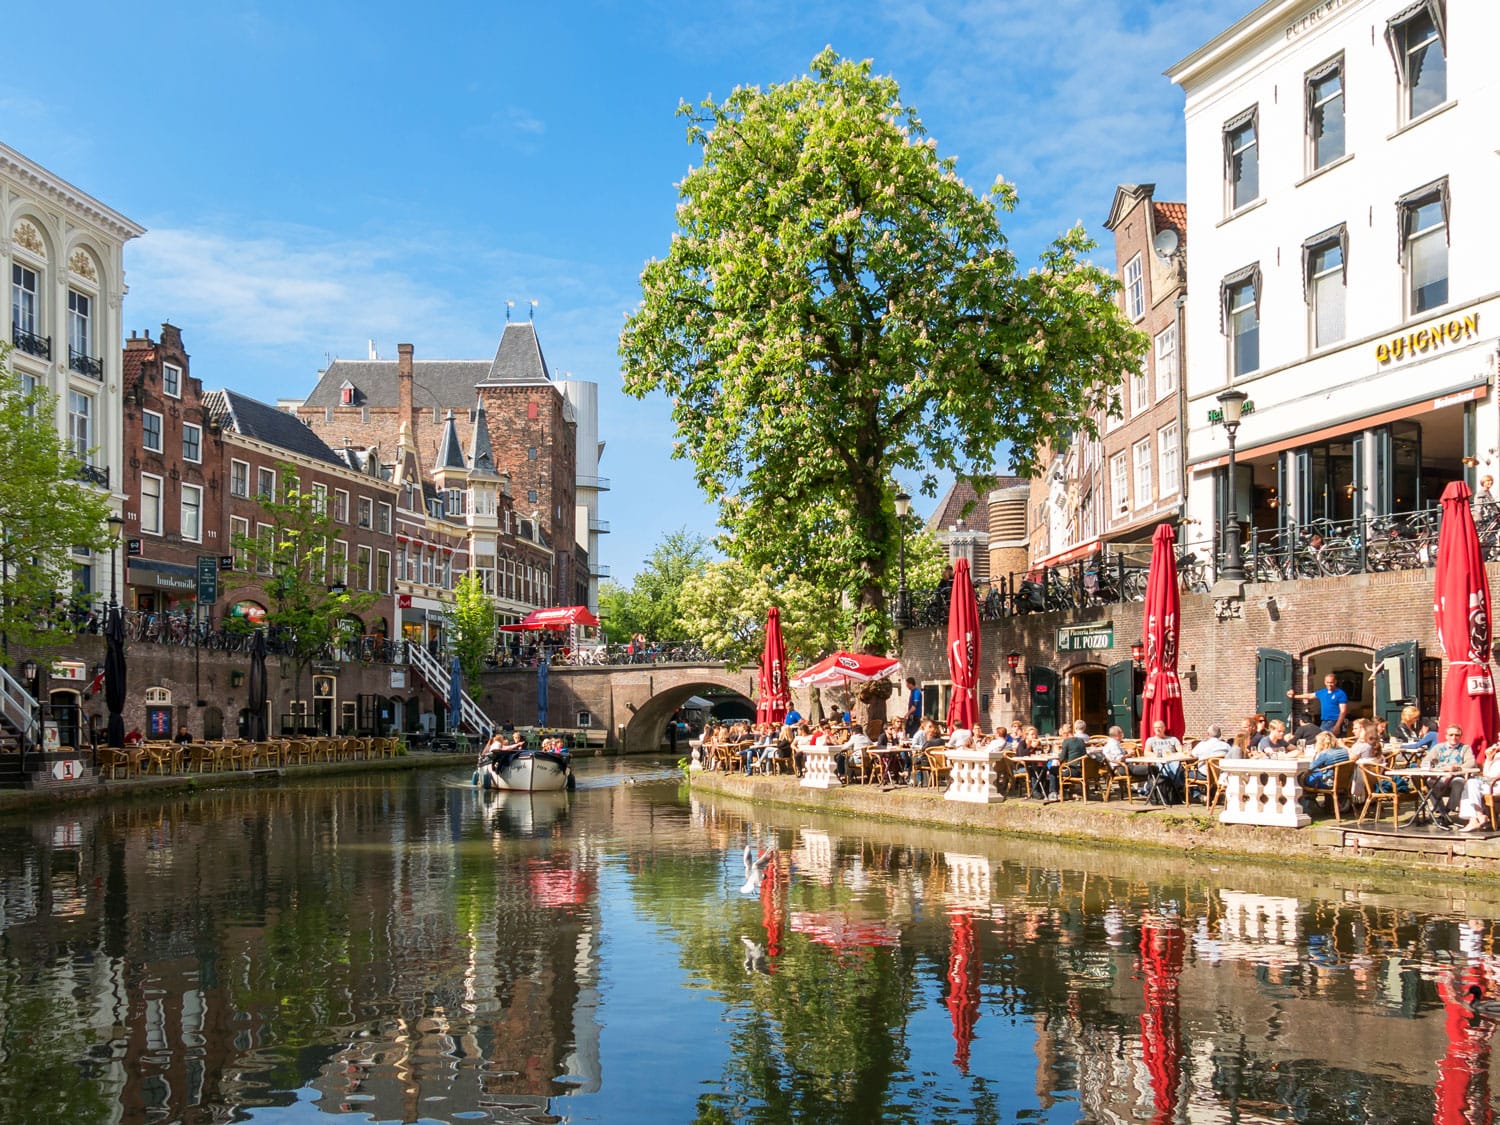 Κάστρο Oudaen και άνθρωποι σε υπαίθρια βεράντα εστιατορίων δίπλα στο κανάλι Oudegracht στην πόλη της Ουτρέχτης, Κάτω Χώρες